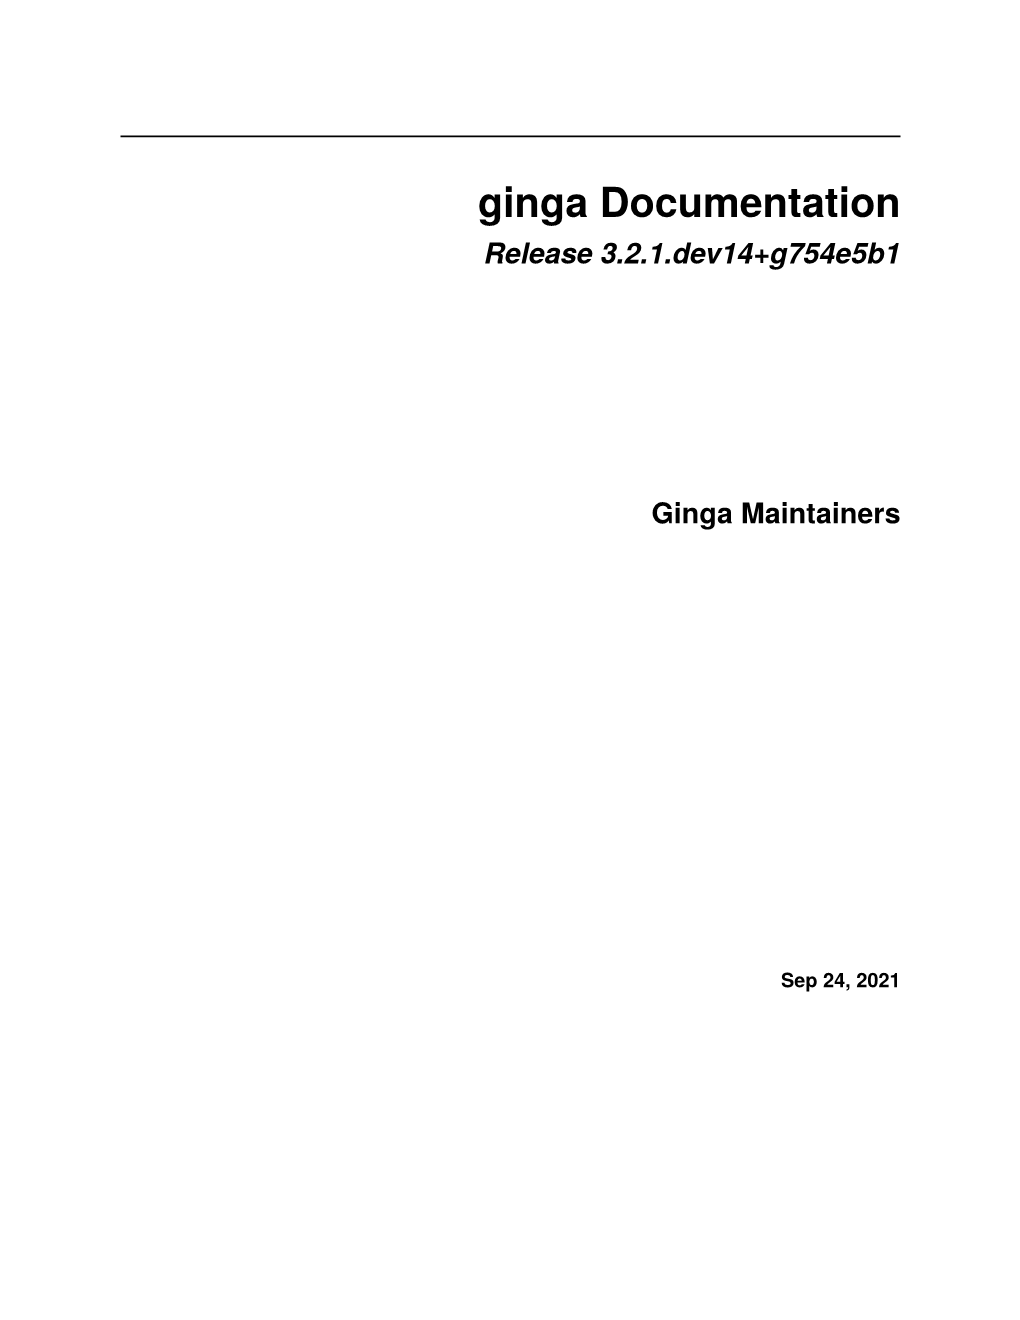 Ginga Documentation Release 3.2.1.Dev14+G754e5b1